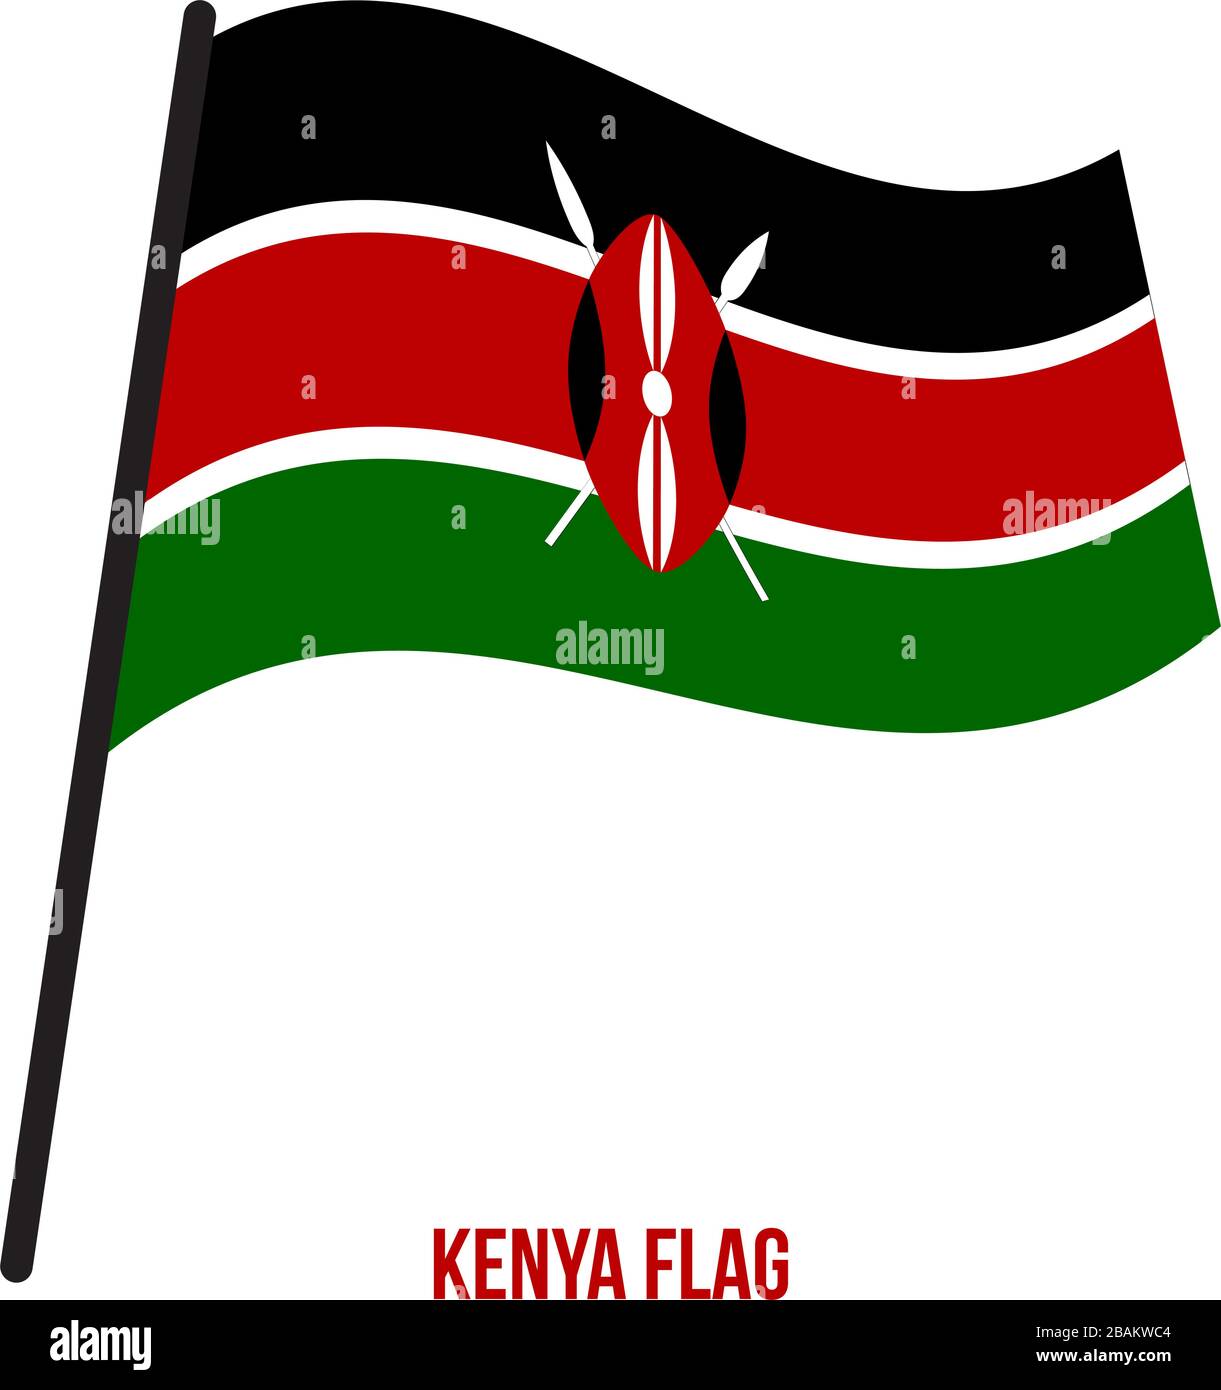 Kenya Flag Waving Vector Illustration on White Background. Kenya National Flag. Stock Vector